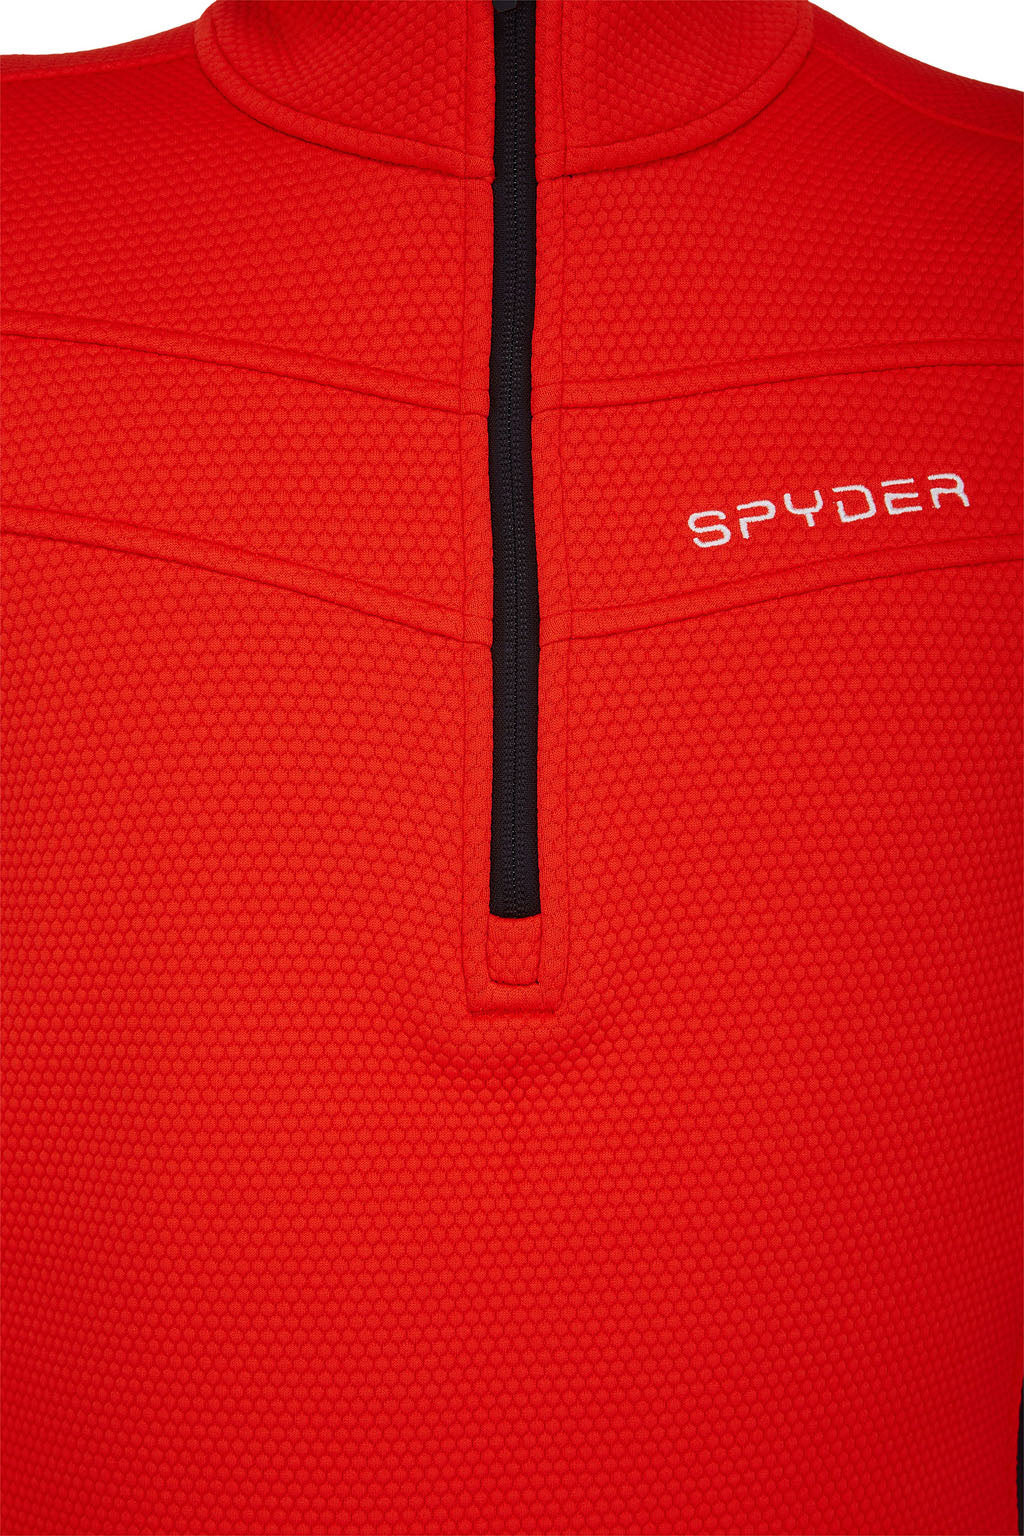 Spyder Encore Half Zip Fleece Pullover - Men's